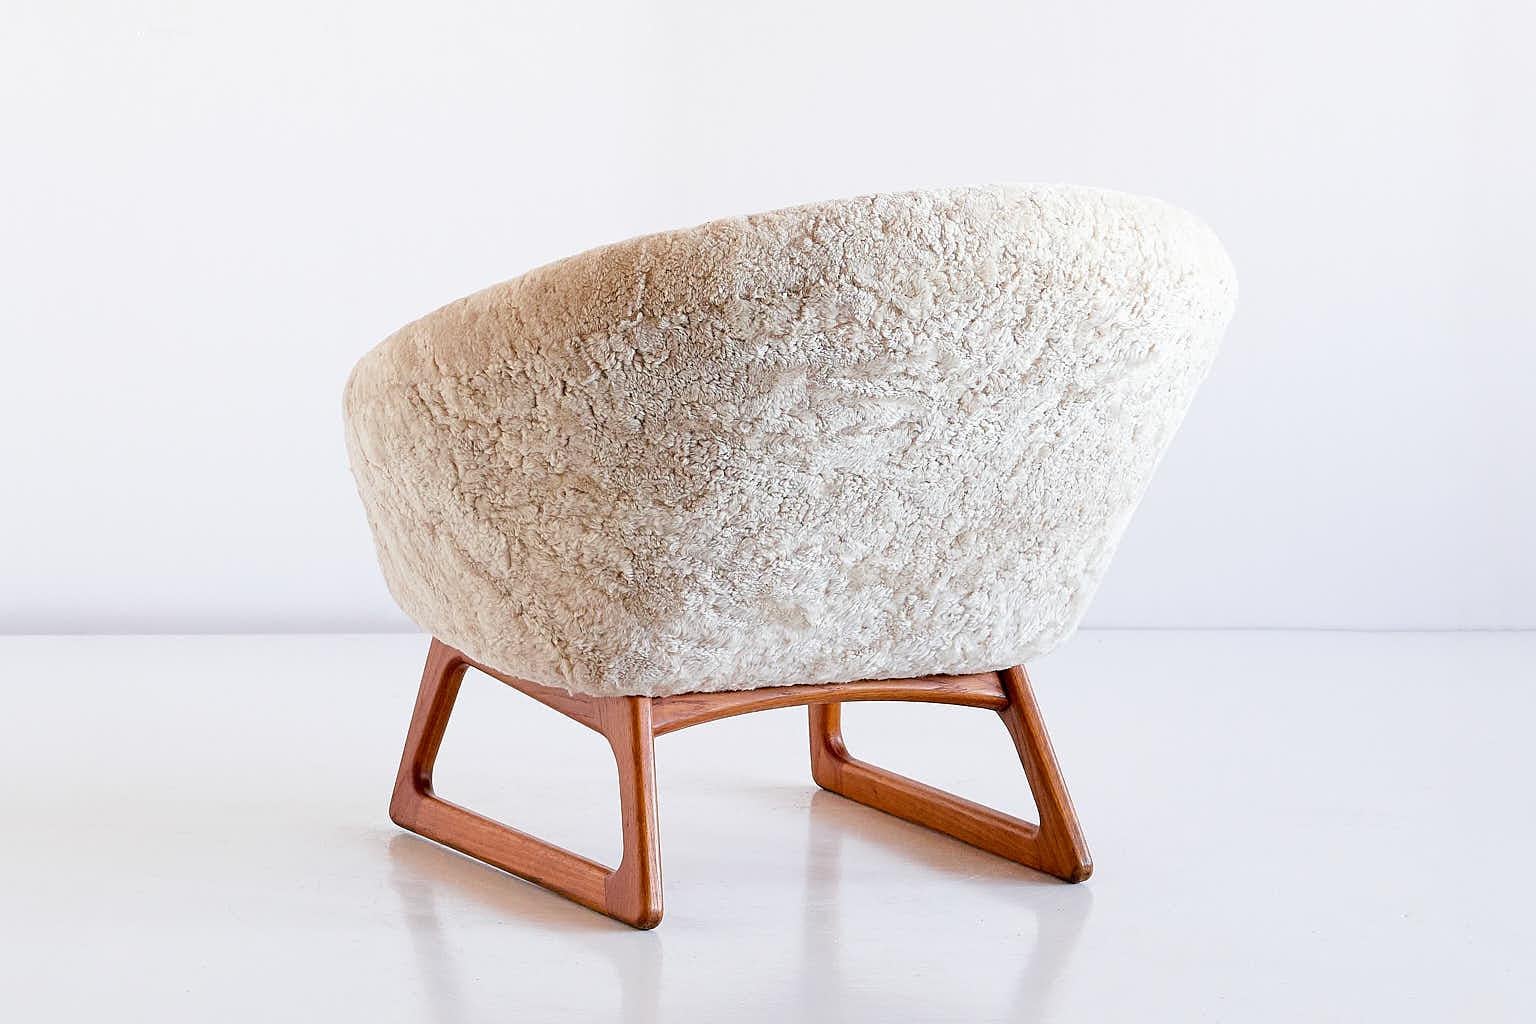 Wood Kurt Østervig Sheepskin Lounge Chair, Model 57A, Rolschau Møbler, Denmark, 1958